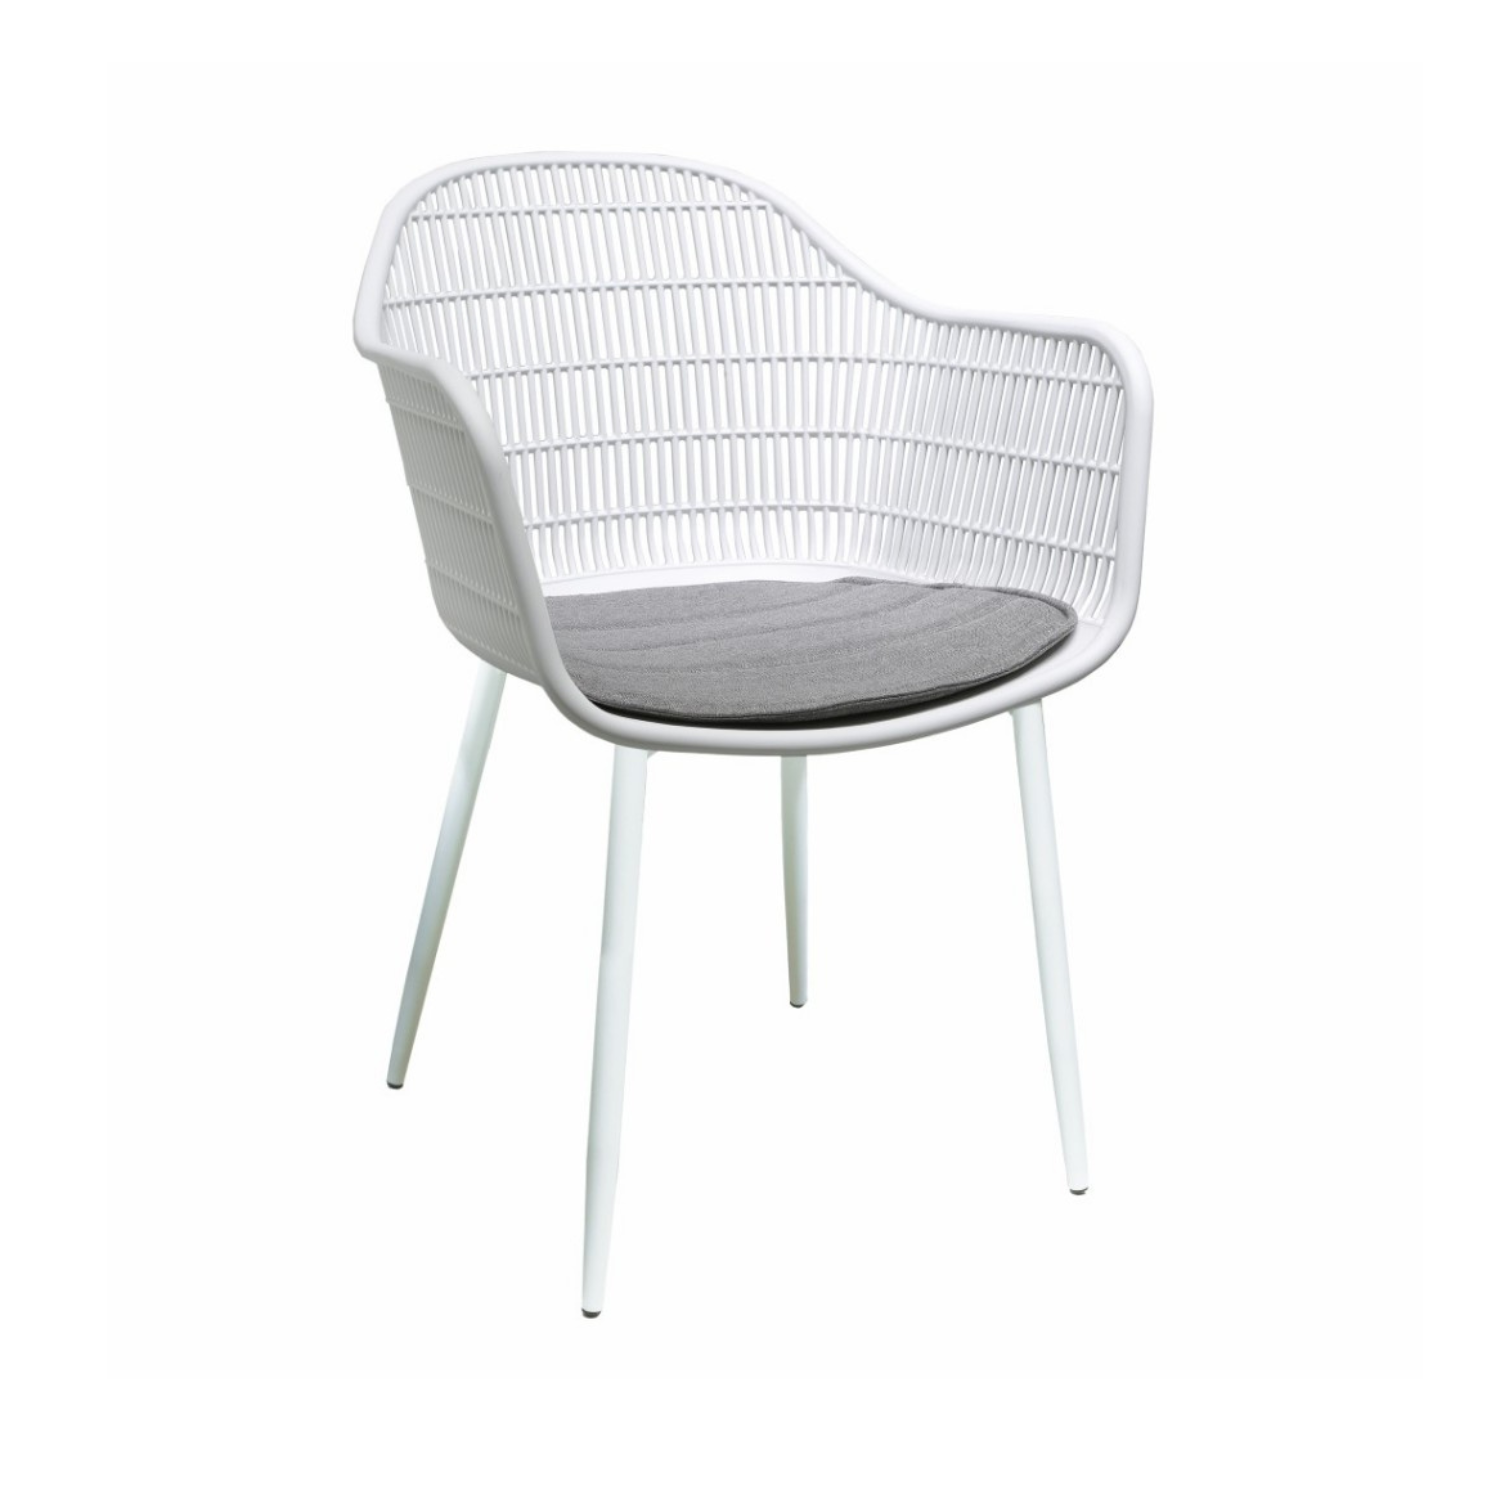 Amaryllis Chair - White